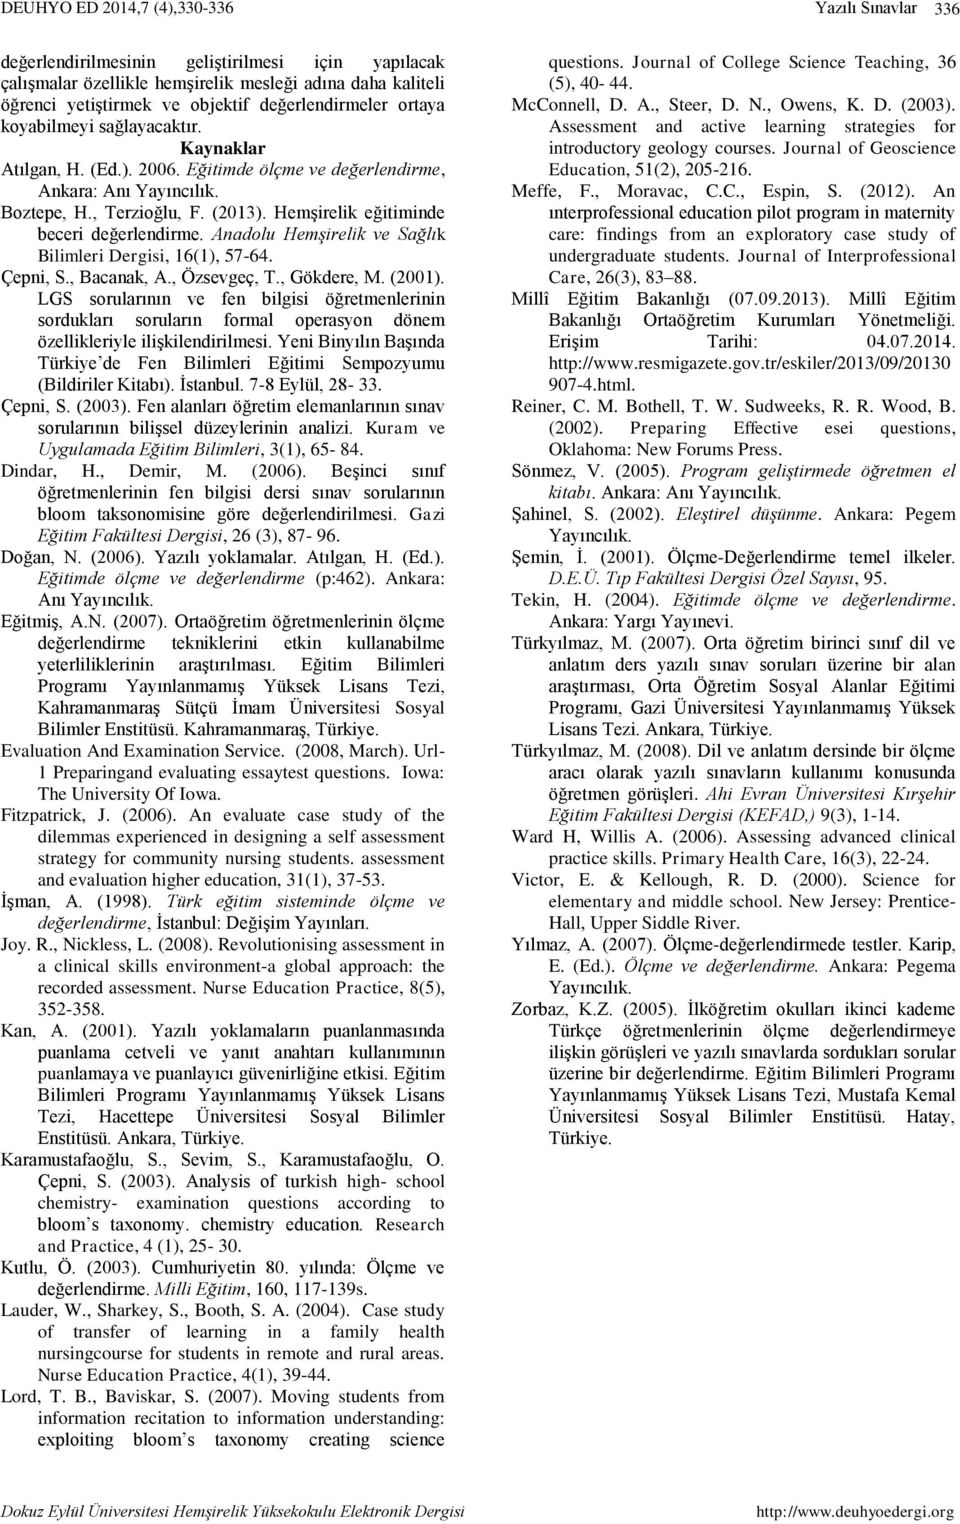 Anadolu Hemşirelik ve Sağlık Bilimleri Dergisi, 16(1), 57-64. Çepni, S., Bacanak, A., Özsevgeç, T., Gökdere, M. (2001).